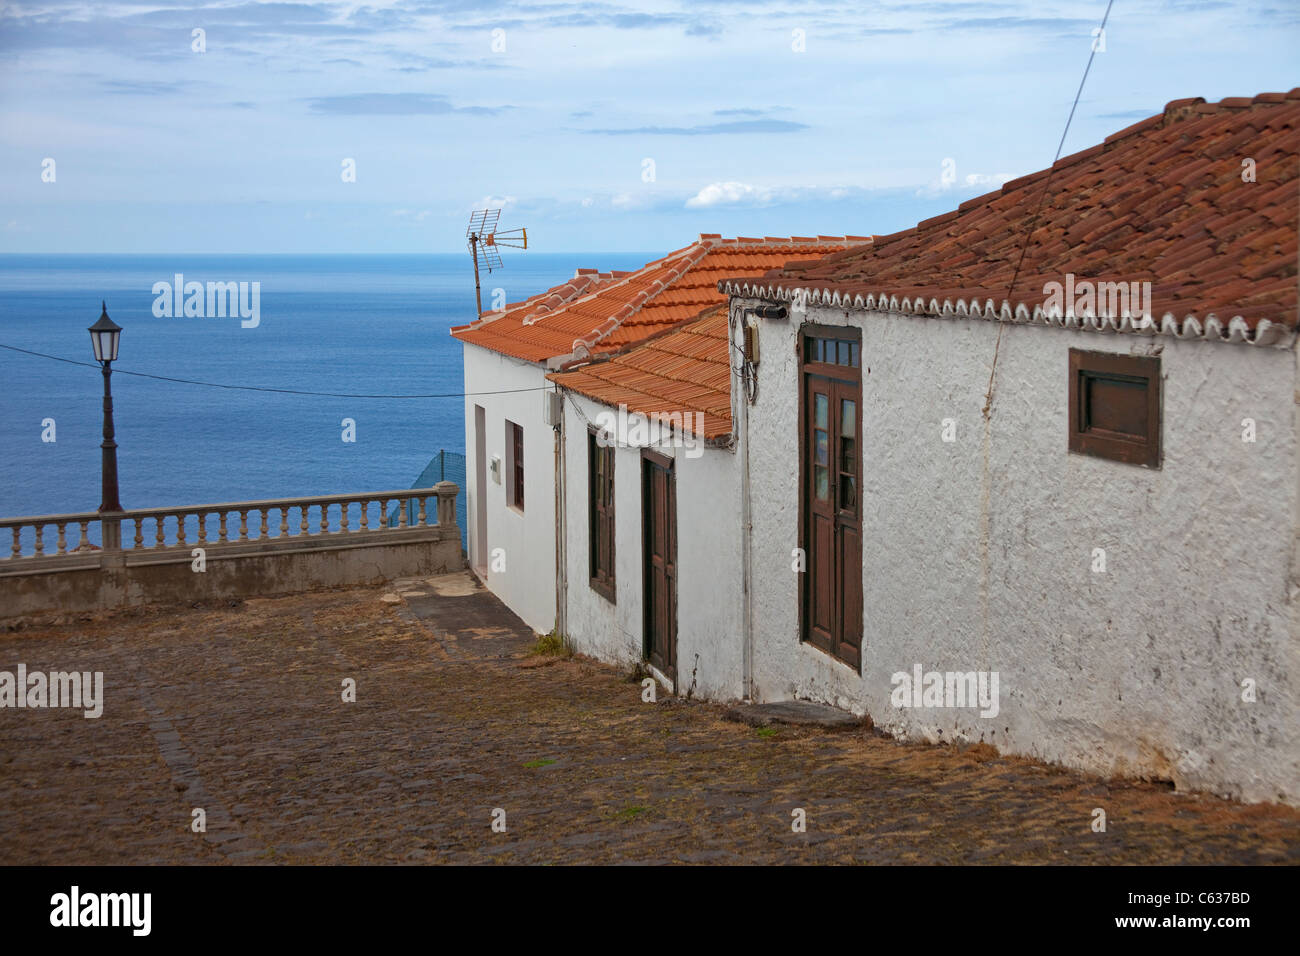 Maisons à Santo Domingo de garafia, la palma, Canary Islands, Spain, Europe Banque D'Images